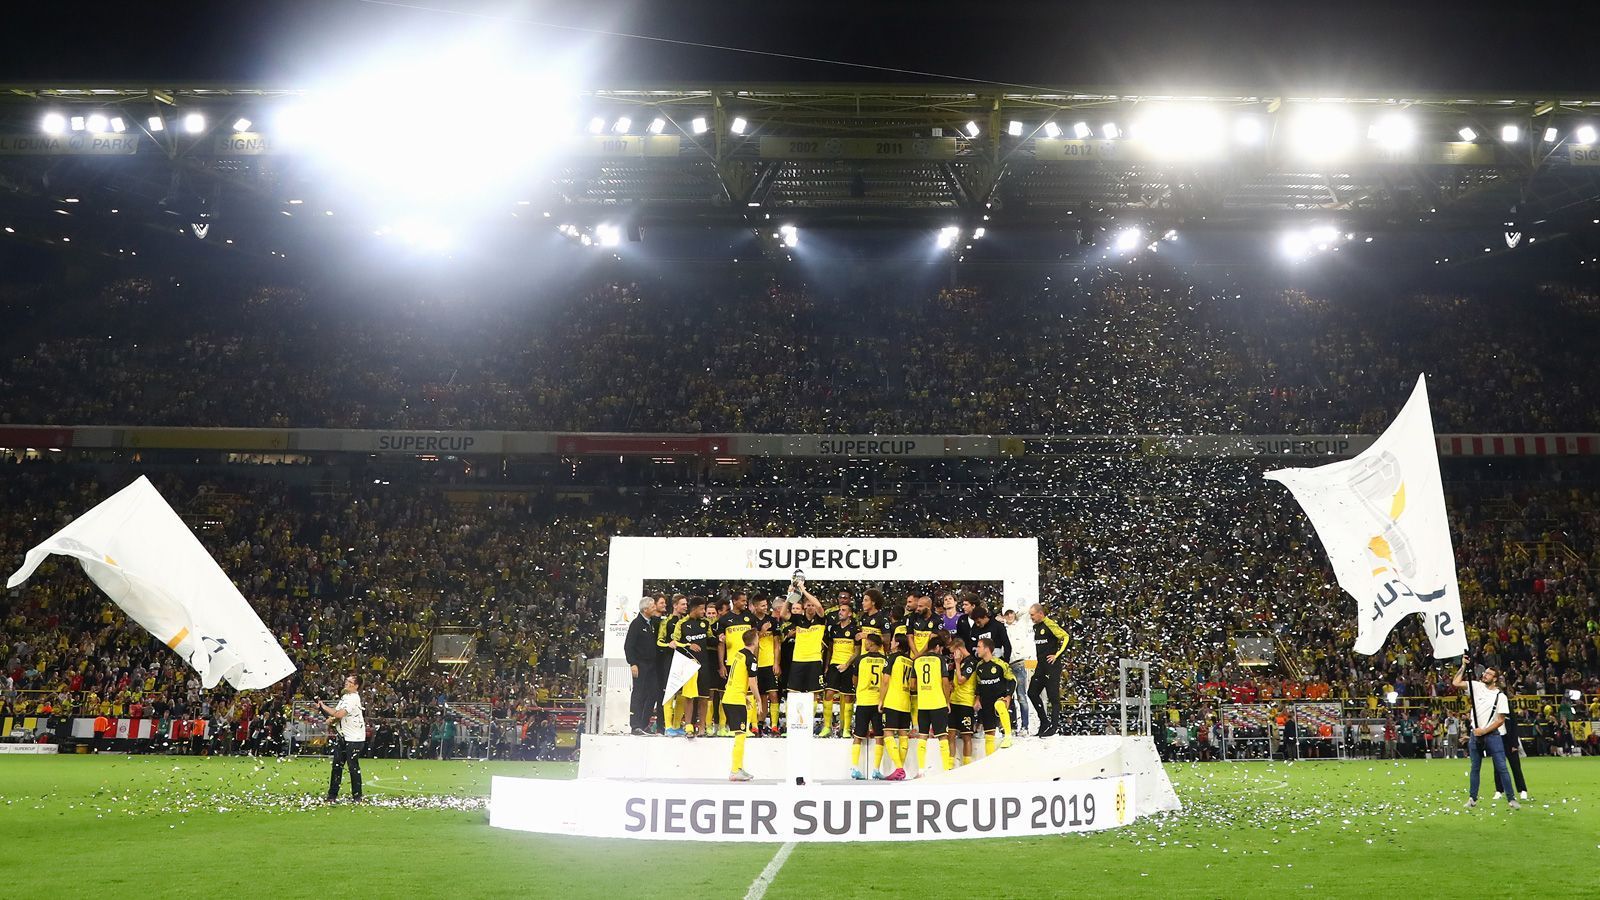 
                <strong>Supercup erst nach dem Bundesliga-Start</strong><br>
                Der Supercup, der zuletzt in der Regel das erste Pflichtspiel der Saison war, findet 2020/21 erst nach dem 2. Spieltag statt. Am Mittwoch, den 30. September, trifft dort Meister und Pokalsieger FC Bayern auf den Tabellenzweiten Borussia Dortmund.
              